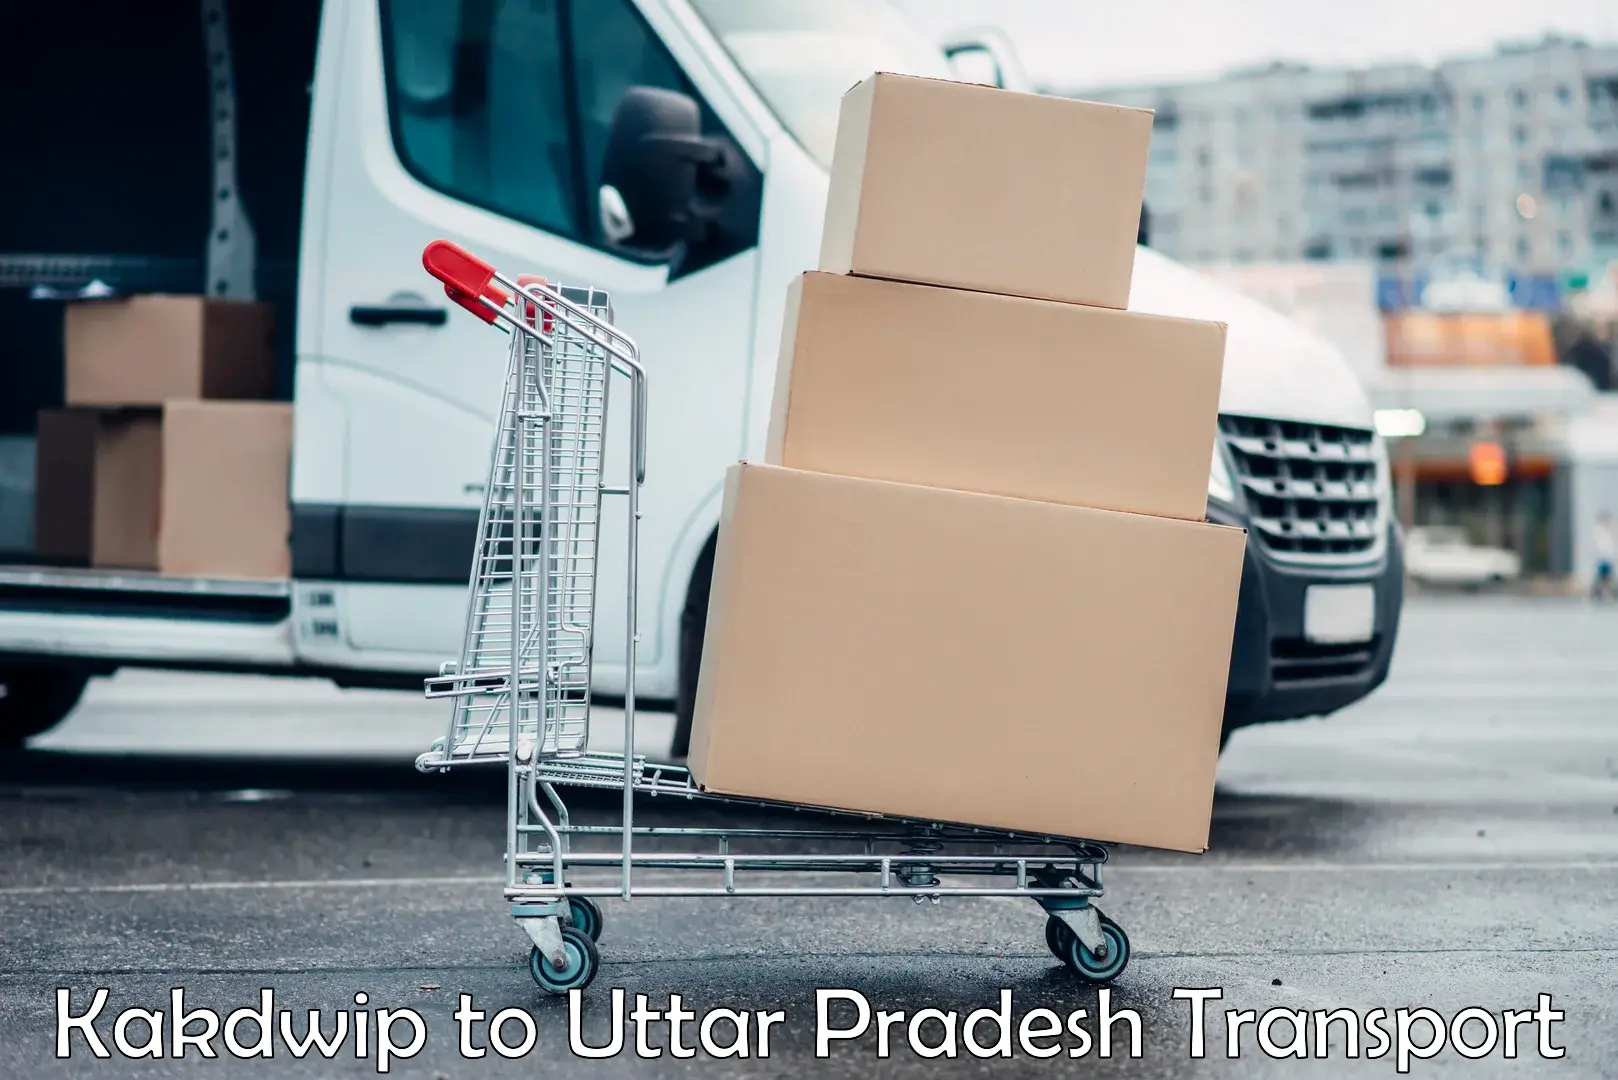 Transportation solution services Kakdwip to Uttar Pradesh